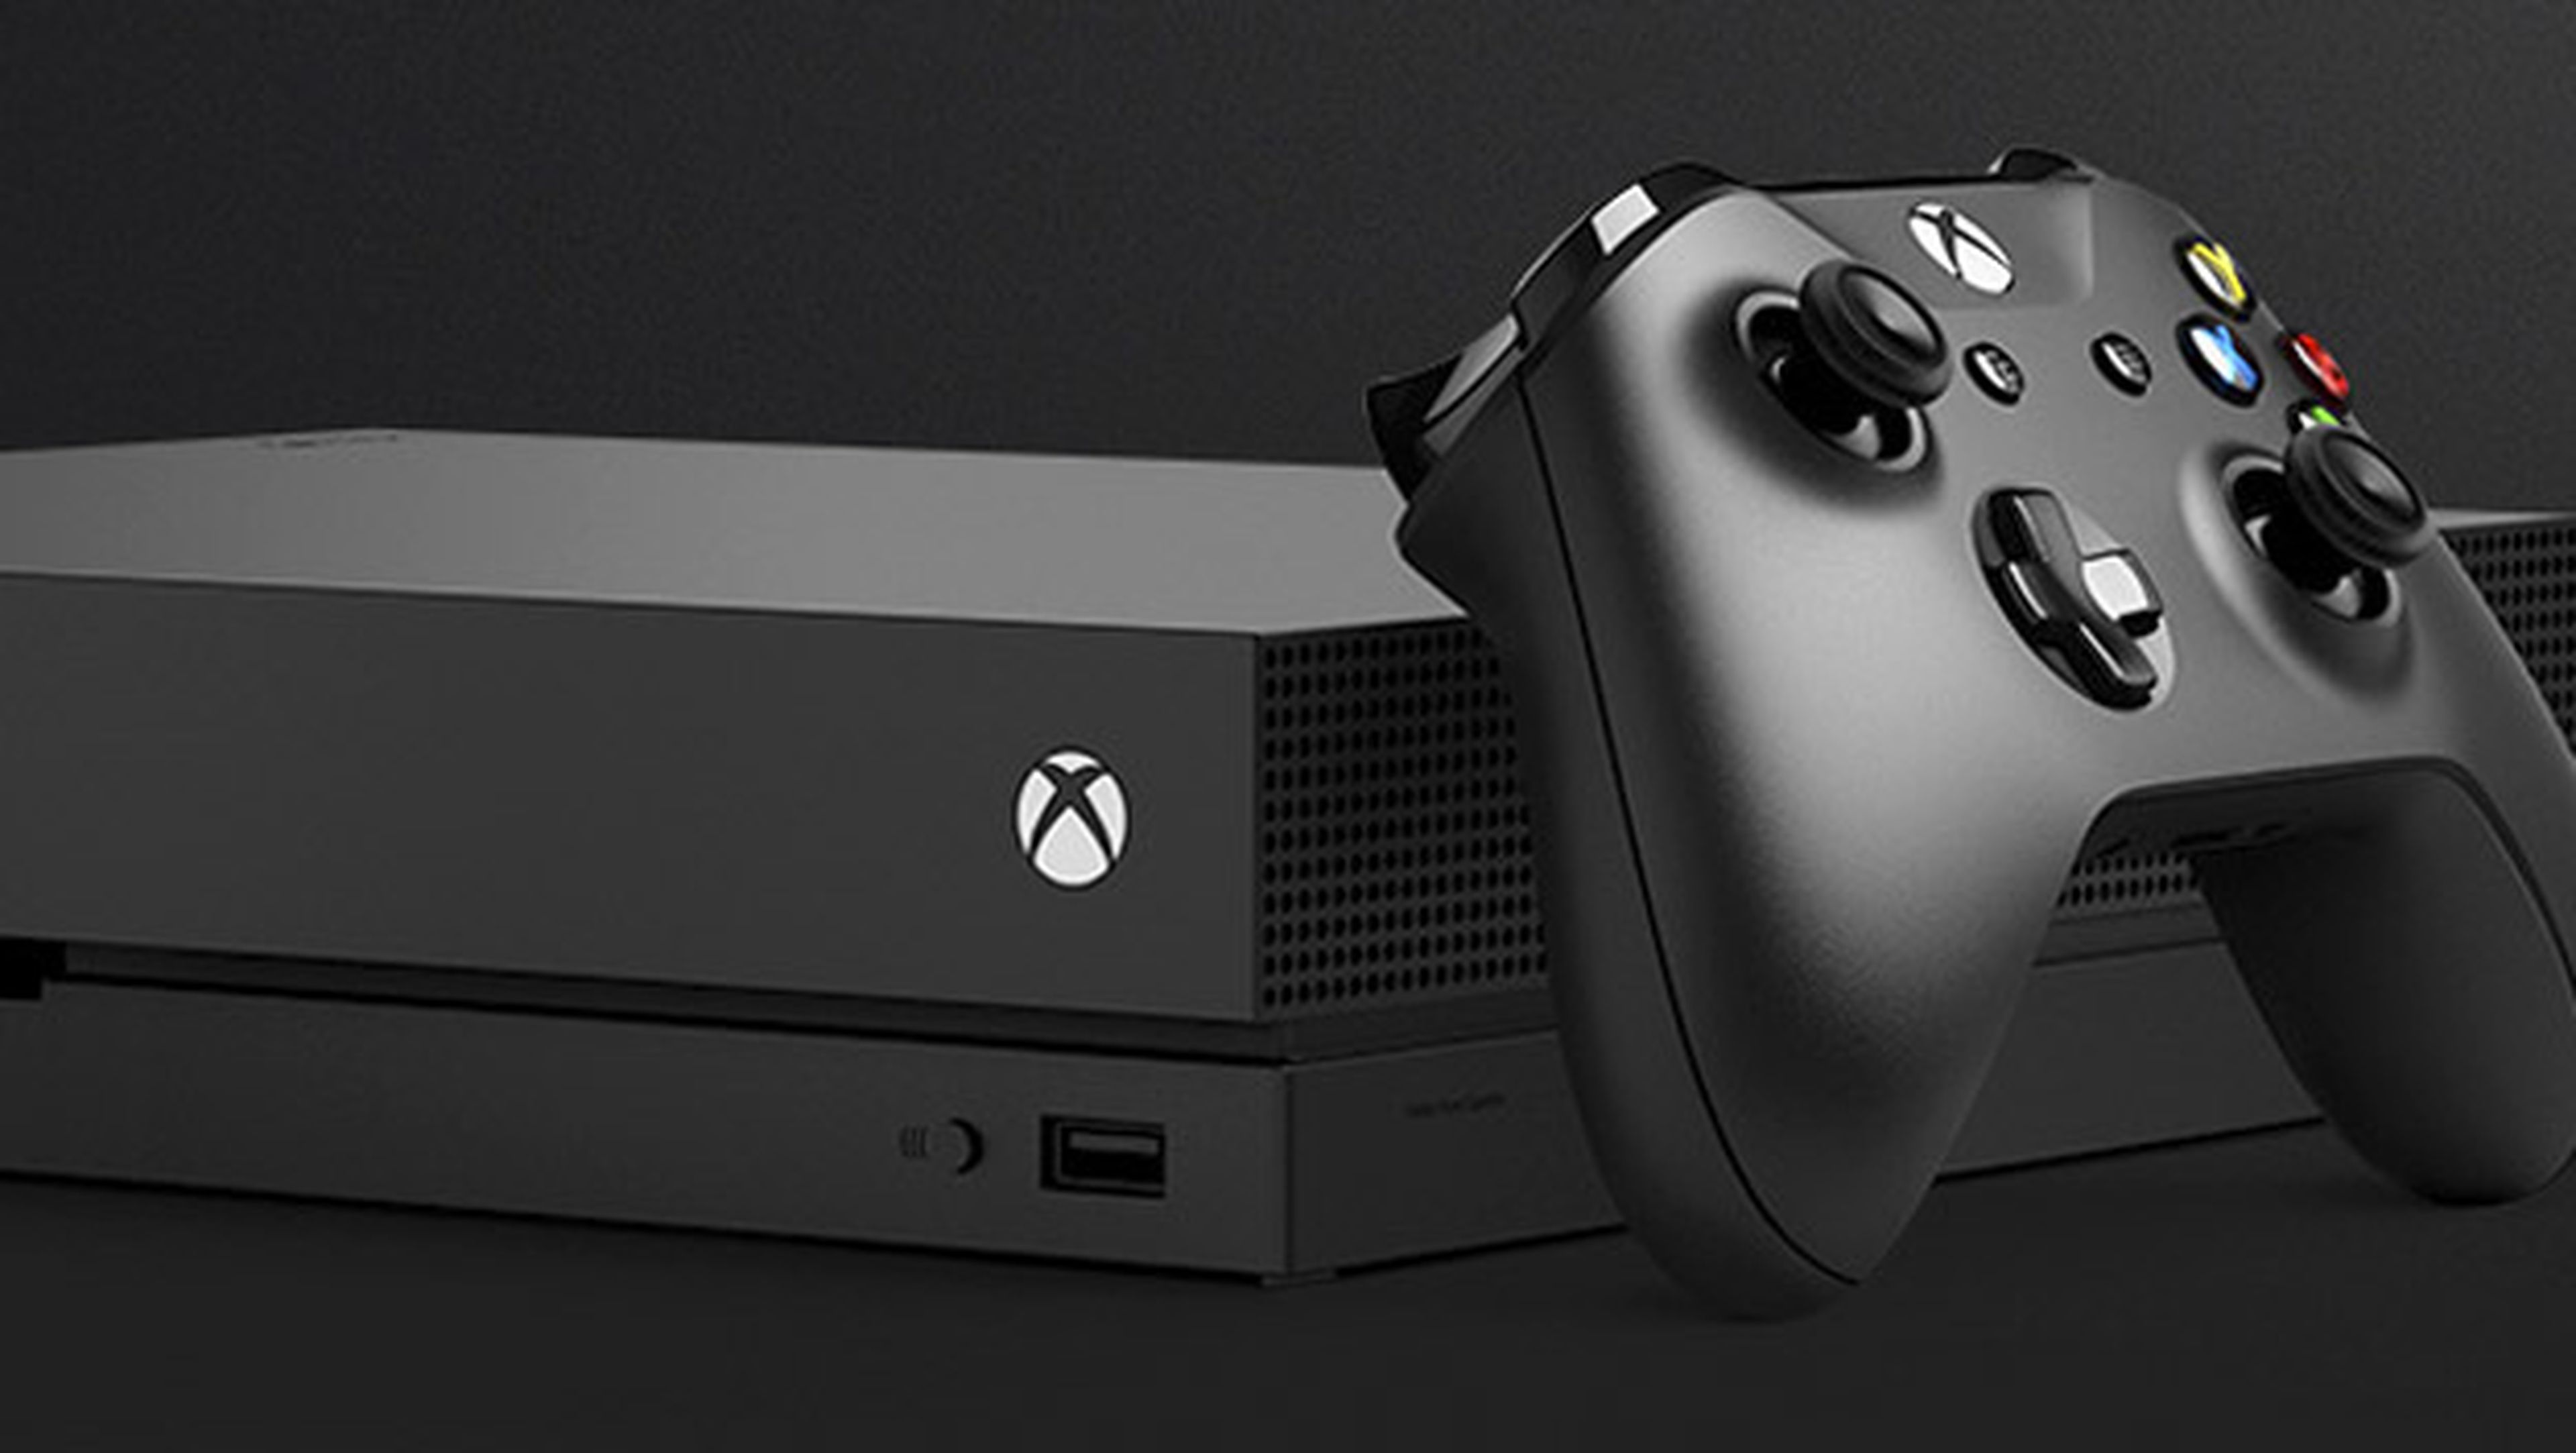 Análisis de Xbox One X, la consola más potente 4K y HDR | Computer Hoy